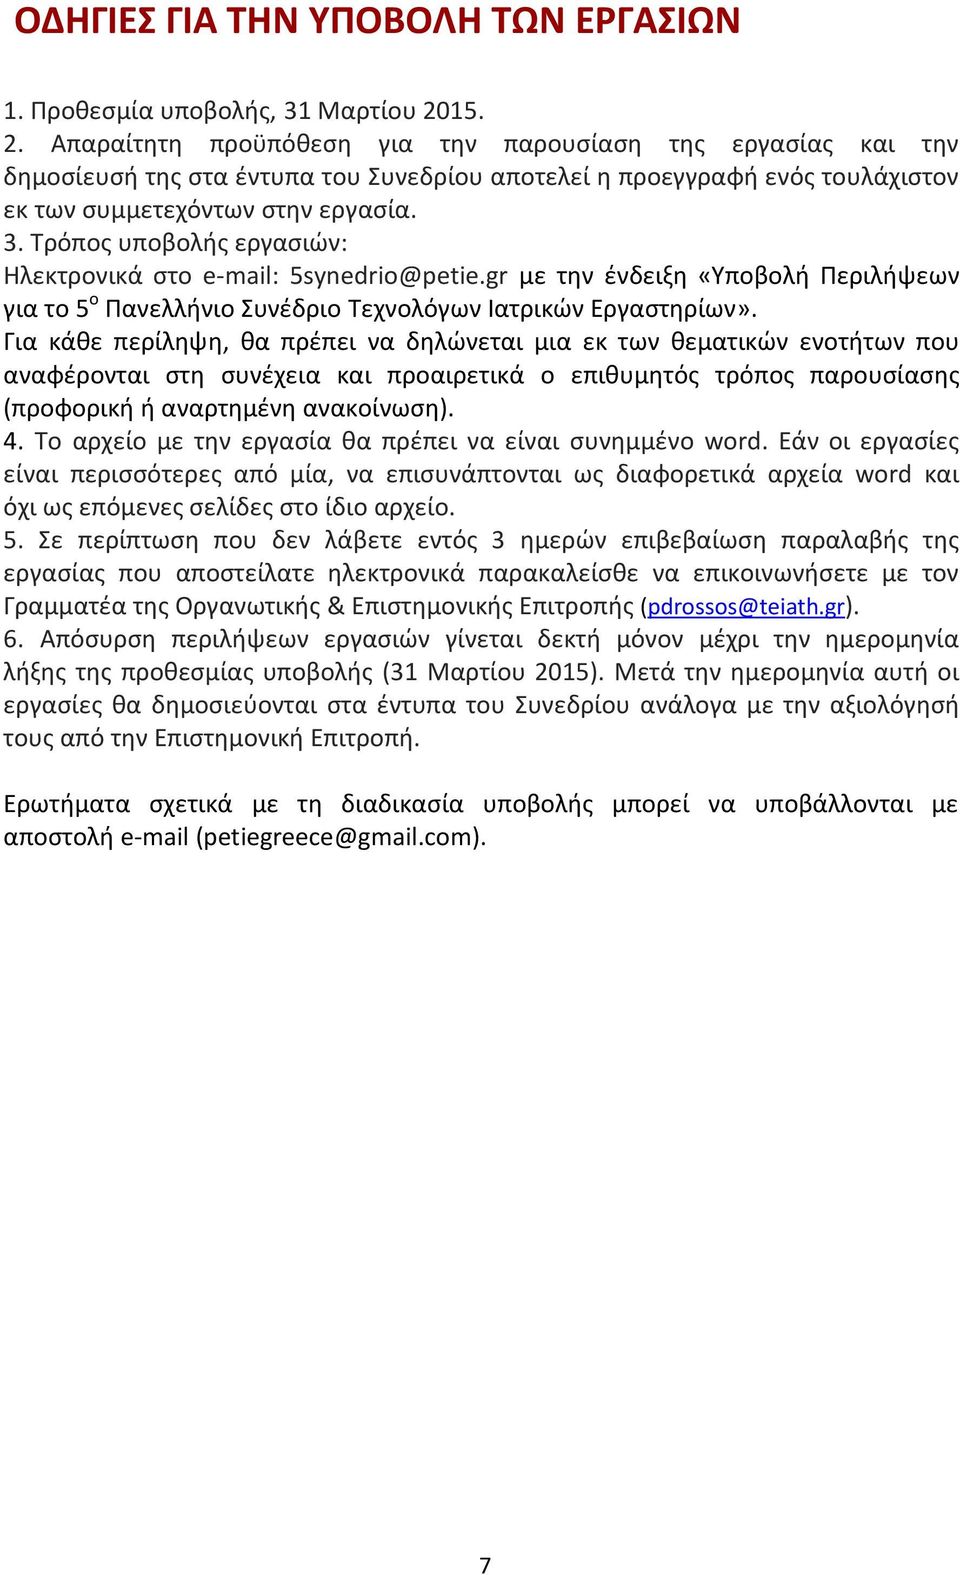 Τρόπος υποβολής εργασιών: Ηλεκτρονικά στο e-mail: 5synedrio@petie.gr με την ένδειξη «Υποβολή Περιλήψεων για το 5 ο Πανελλήνιο Συνέδριο Τεχνολόγων Ιατρικών Εργαστηρίων».